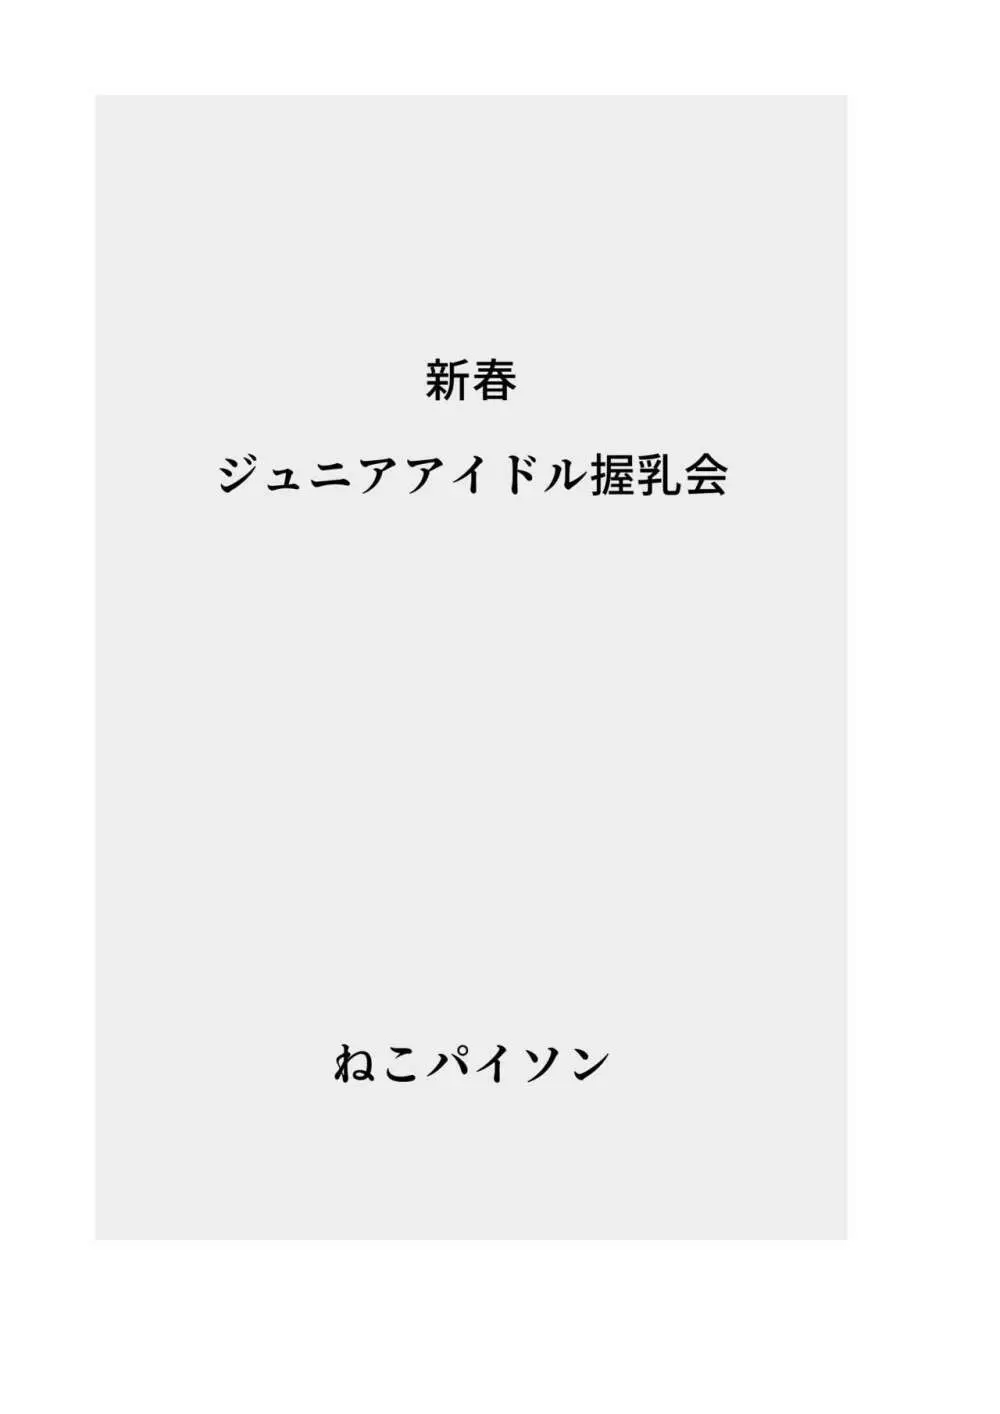 【総集編】発育CG集まとめ vol.13 39ページ